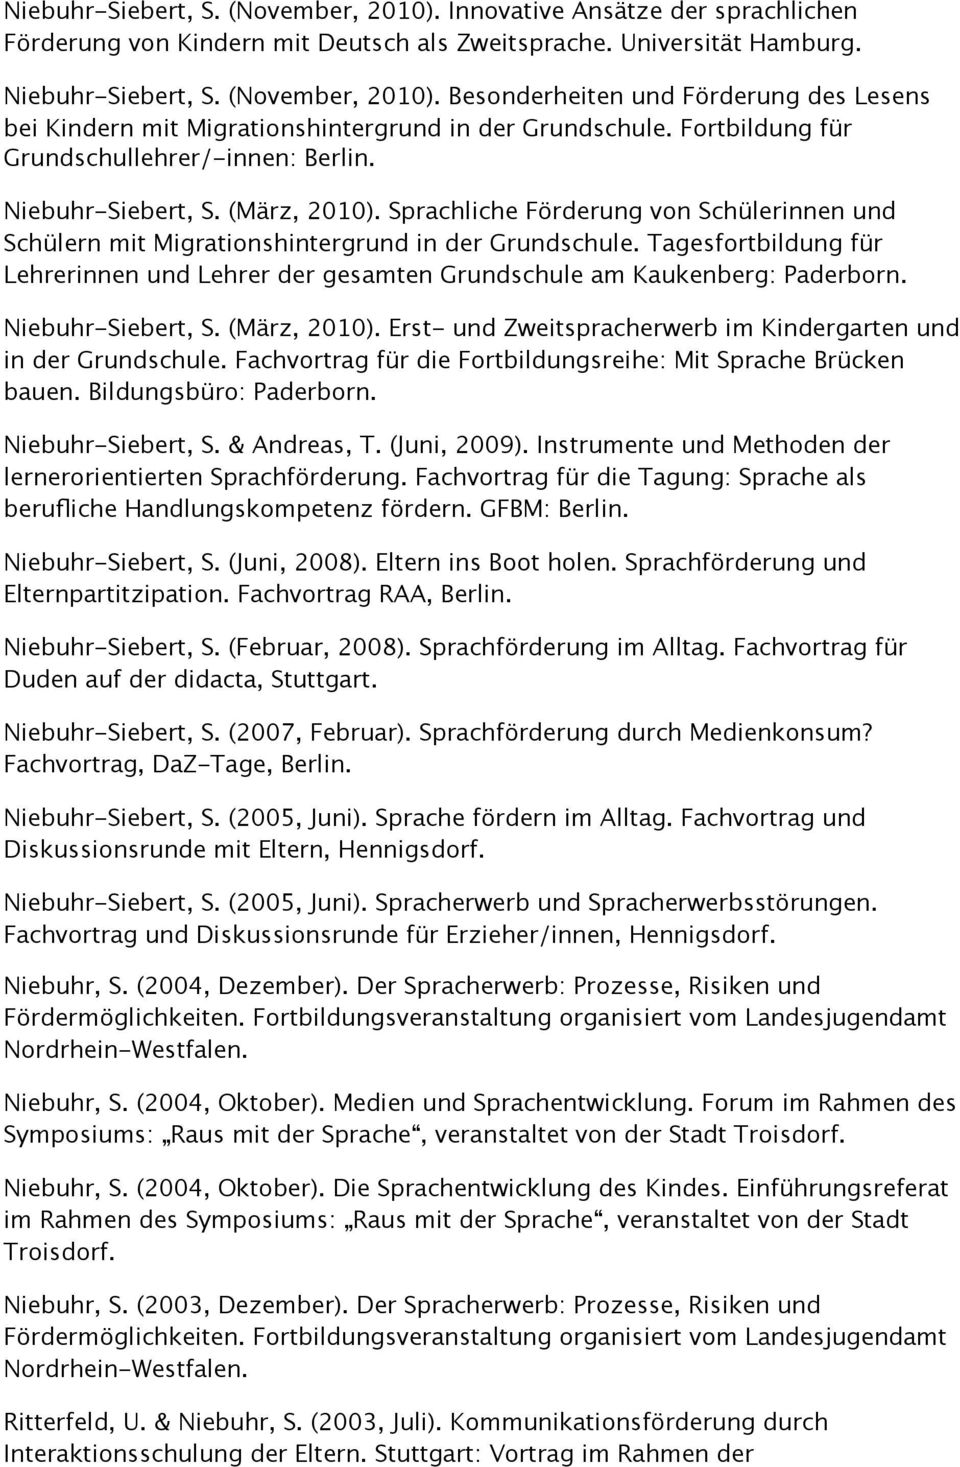 Tagesfortbildung für Lehrerinnen und Lehrer der gesamten Grundschule am Kaukenberg: Paderborn. Niebuhr-Siebert, S. (März, 2010). Erst- und Zweitspracherwerb im Kindergarten und in der Grundschule.